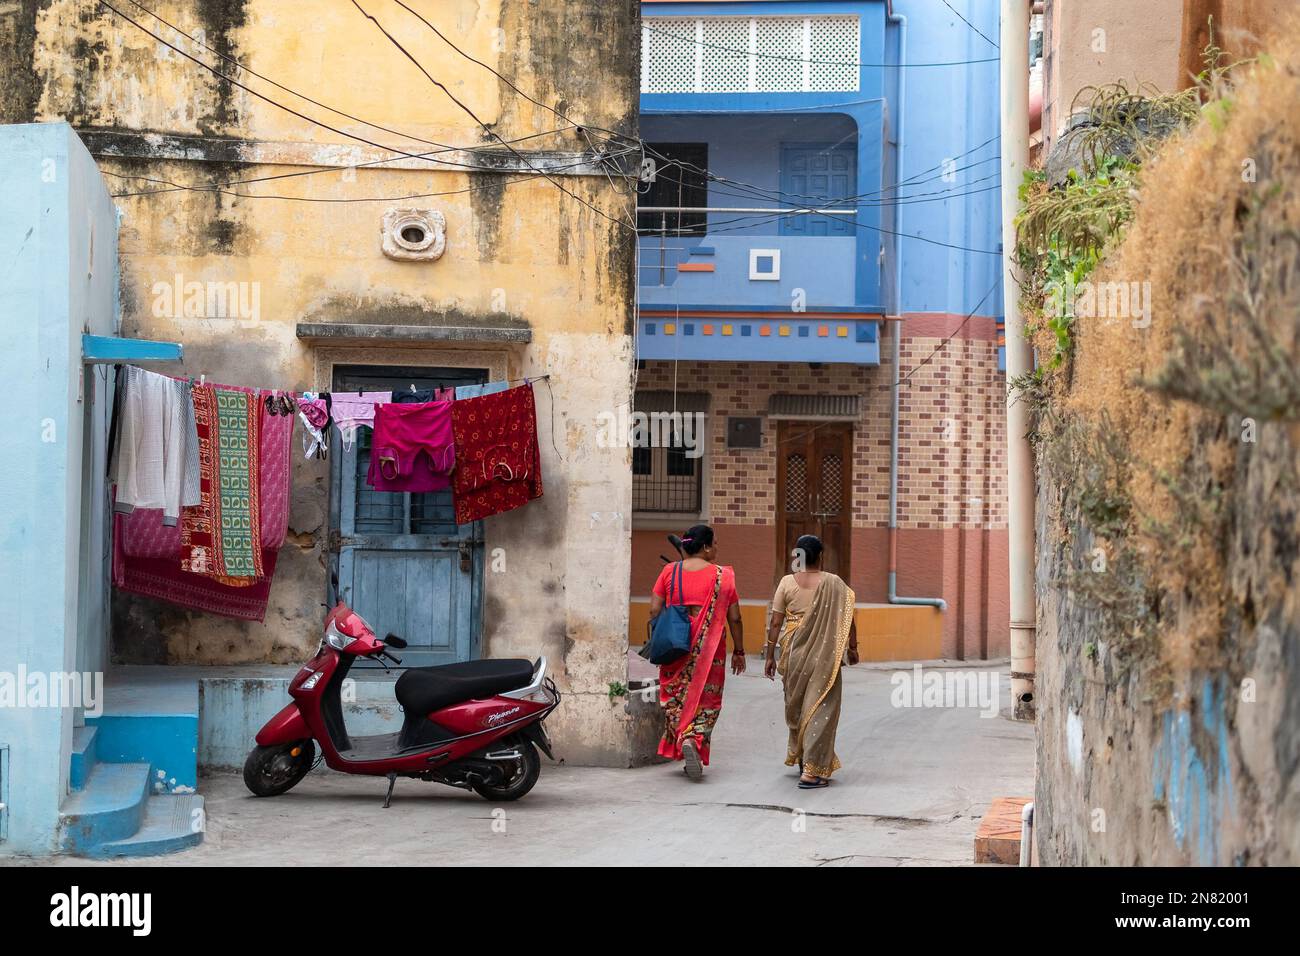 DIU, Inde - décembre 2018 : vue arrière de deux femmes marchant dans une ruelle étroite dans un vieux quartier de la ville de DIU. Banque D'Images